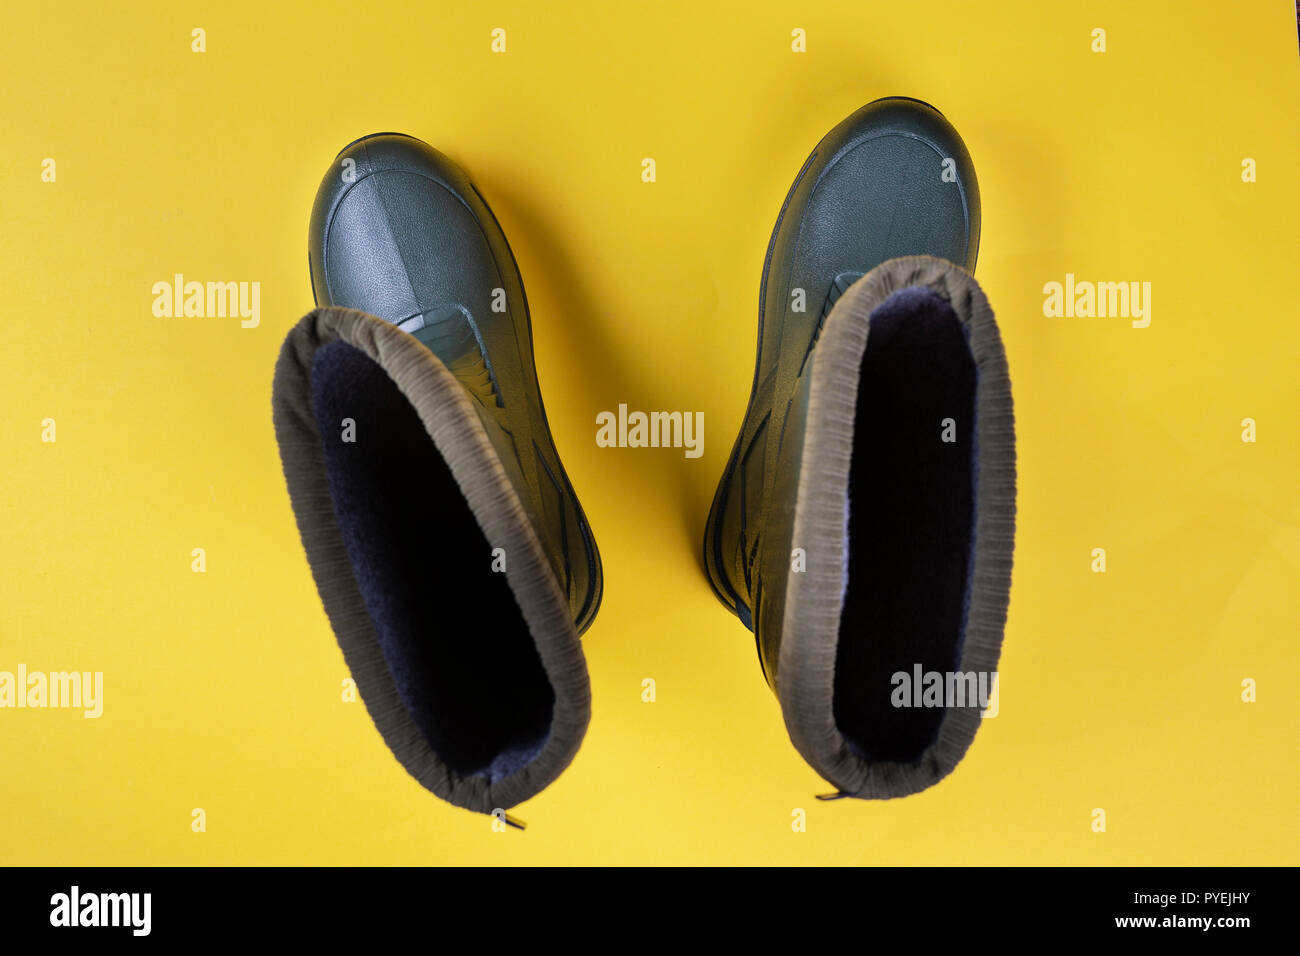 Nuovo uomo stivali di gomma. scarpe impermeabili per l'autunno. scarpe comode per la pesca Foto Stock